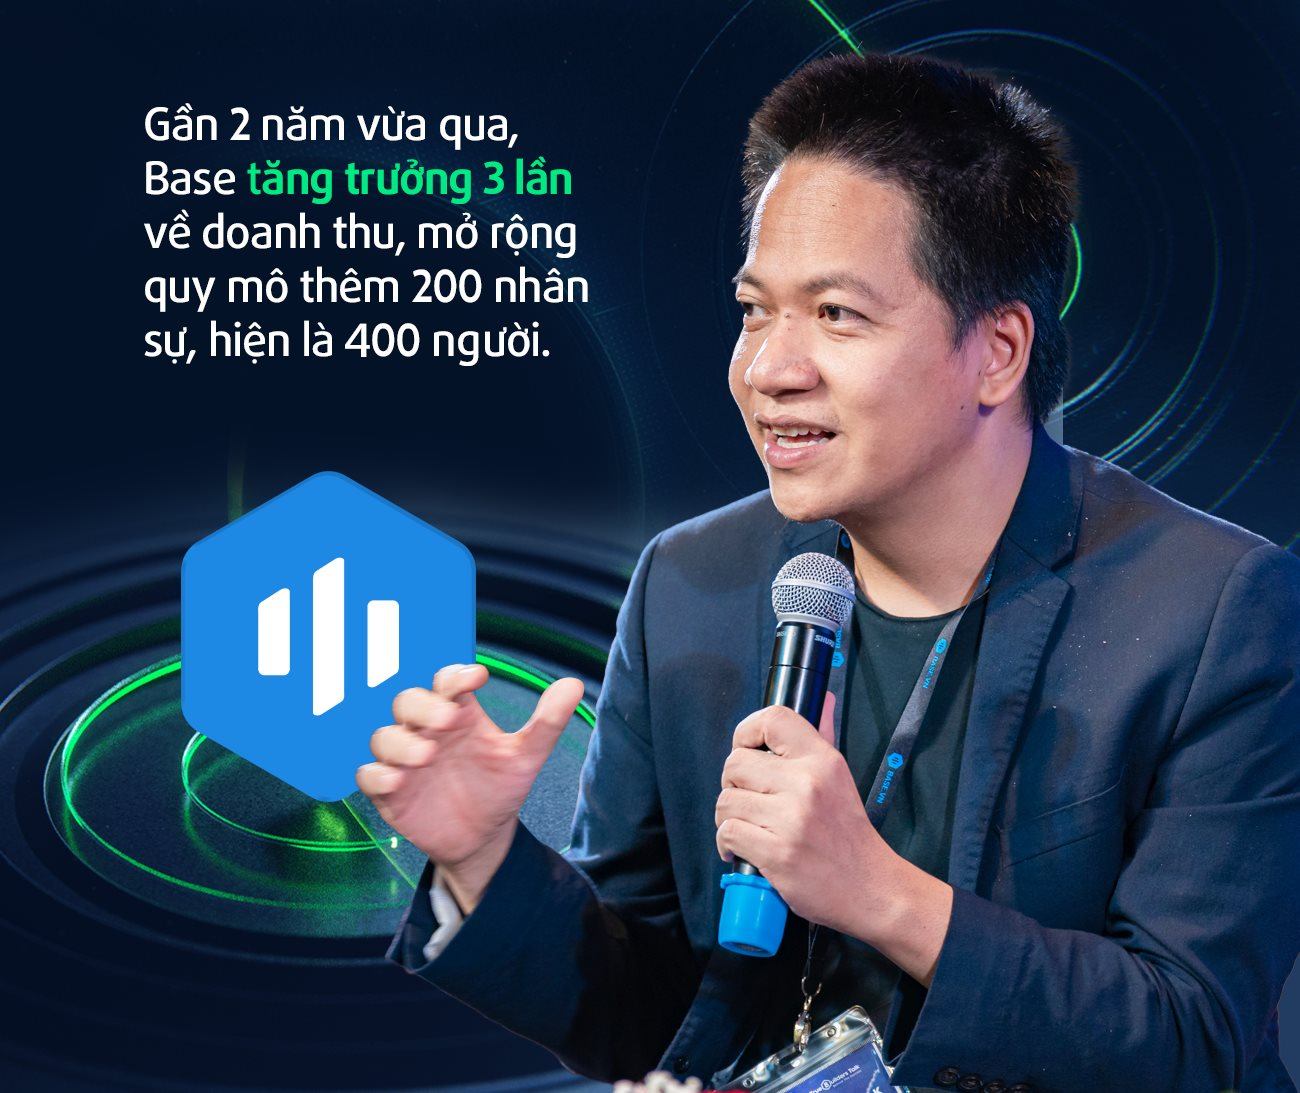 CEO Base.vn Phạm Kim Hùng: “Lãnh đạo FPT vẫn nói chuyện mục tiêu tăng trưởng vài chục phần trăm, tôi được truyền cảm hứng rất nhiều” - Ảnh 6.